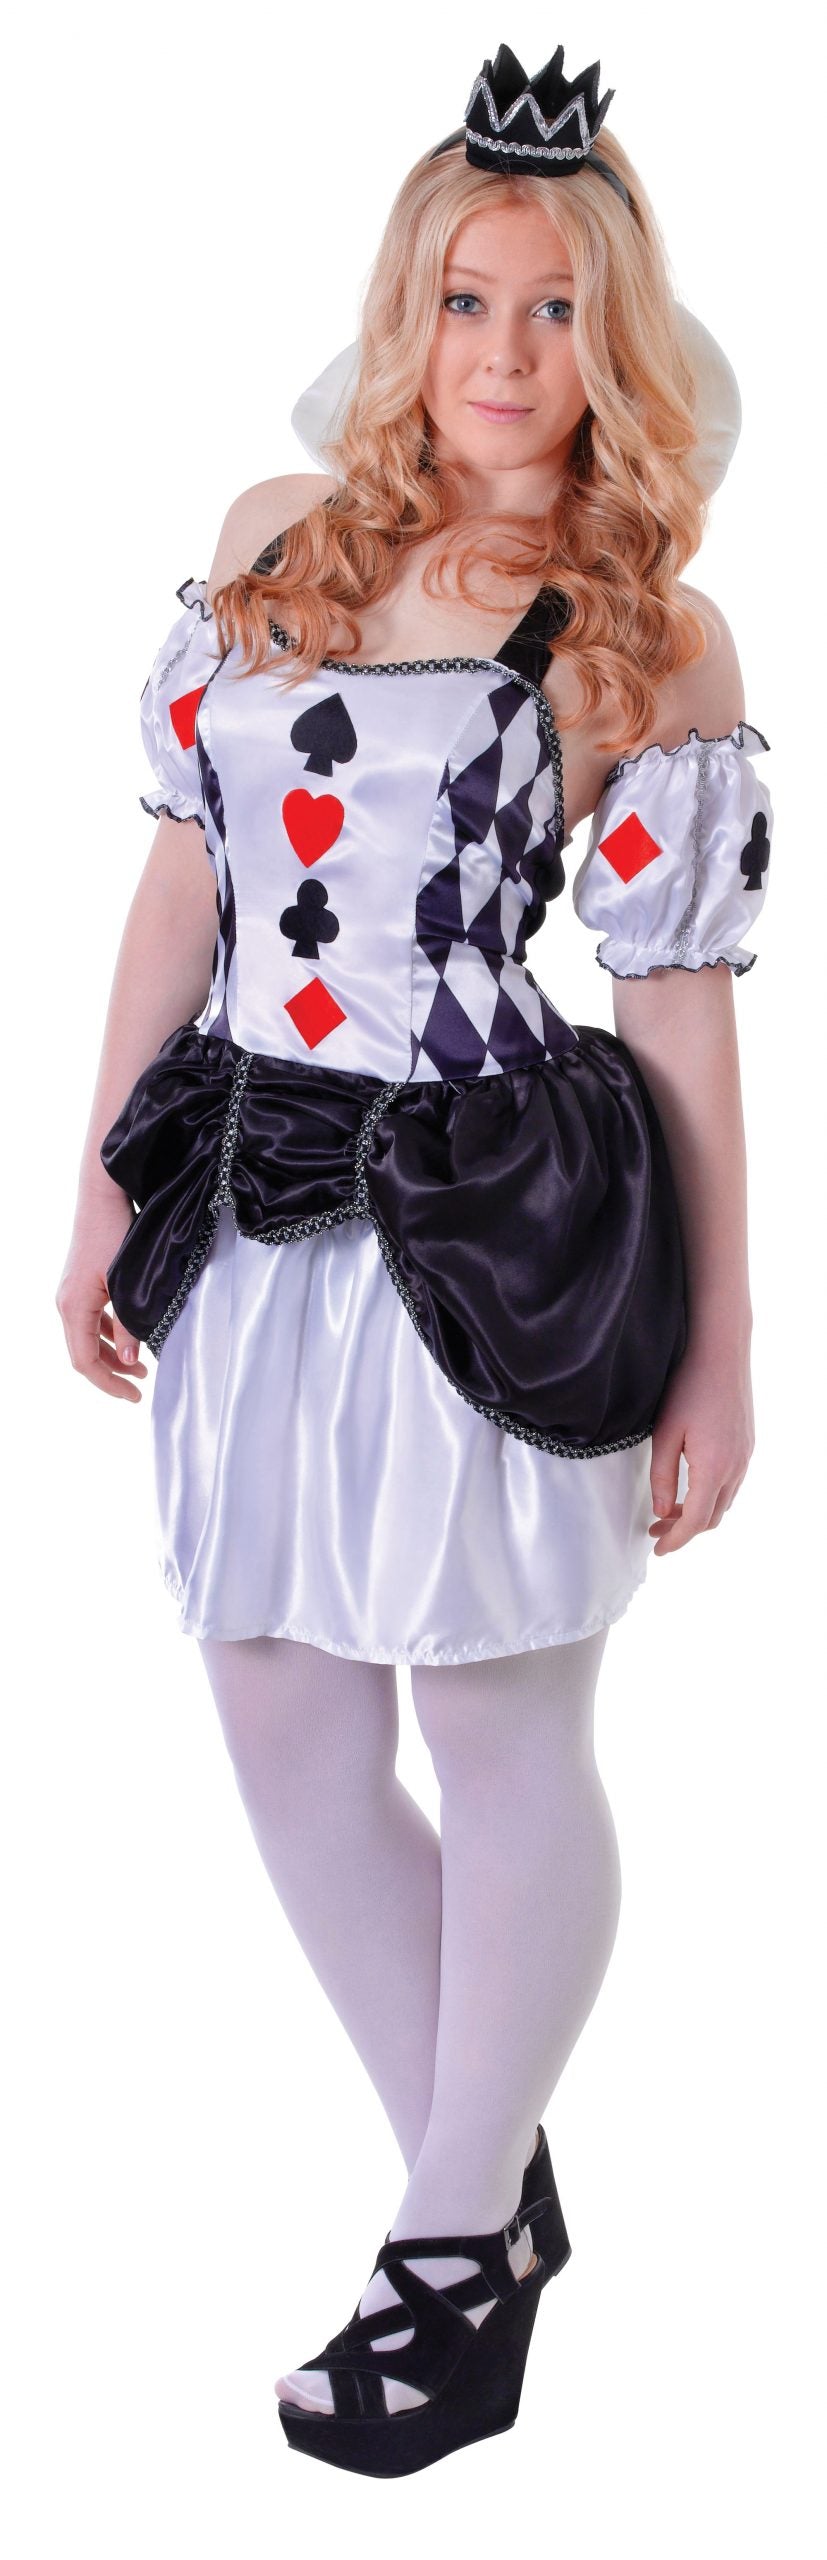 Harlequin Queen of Cards Costume Teen 12-15 Years_1